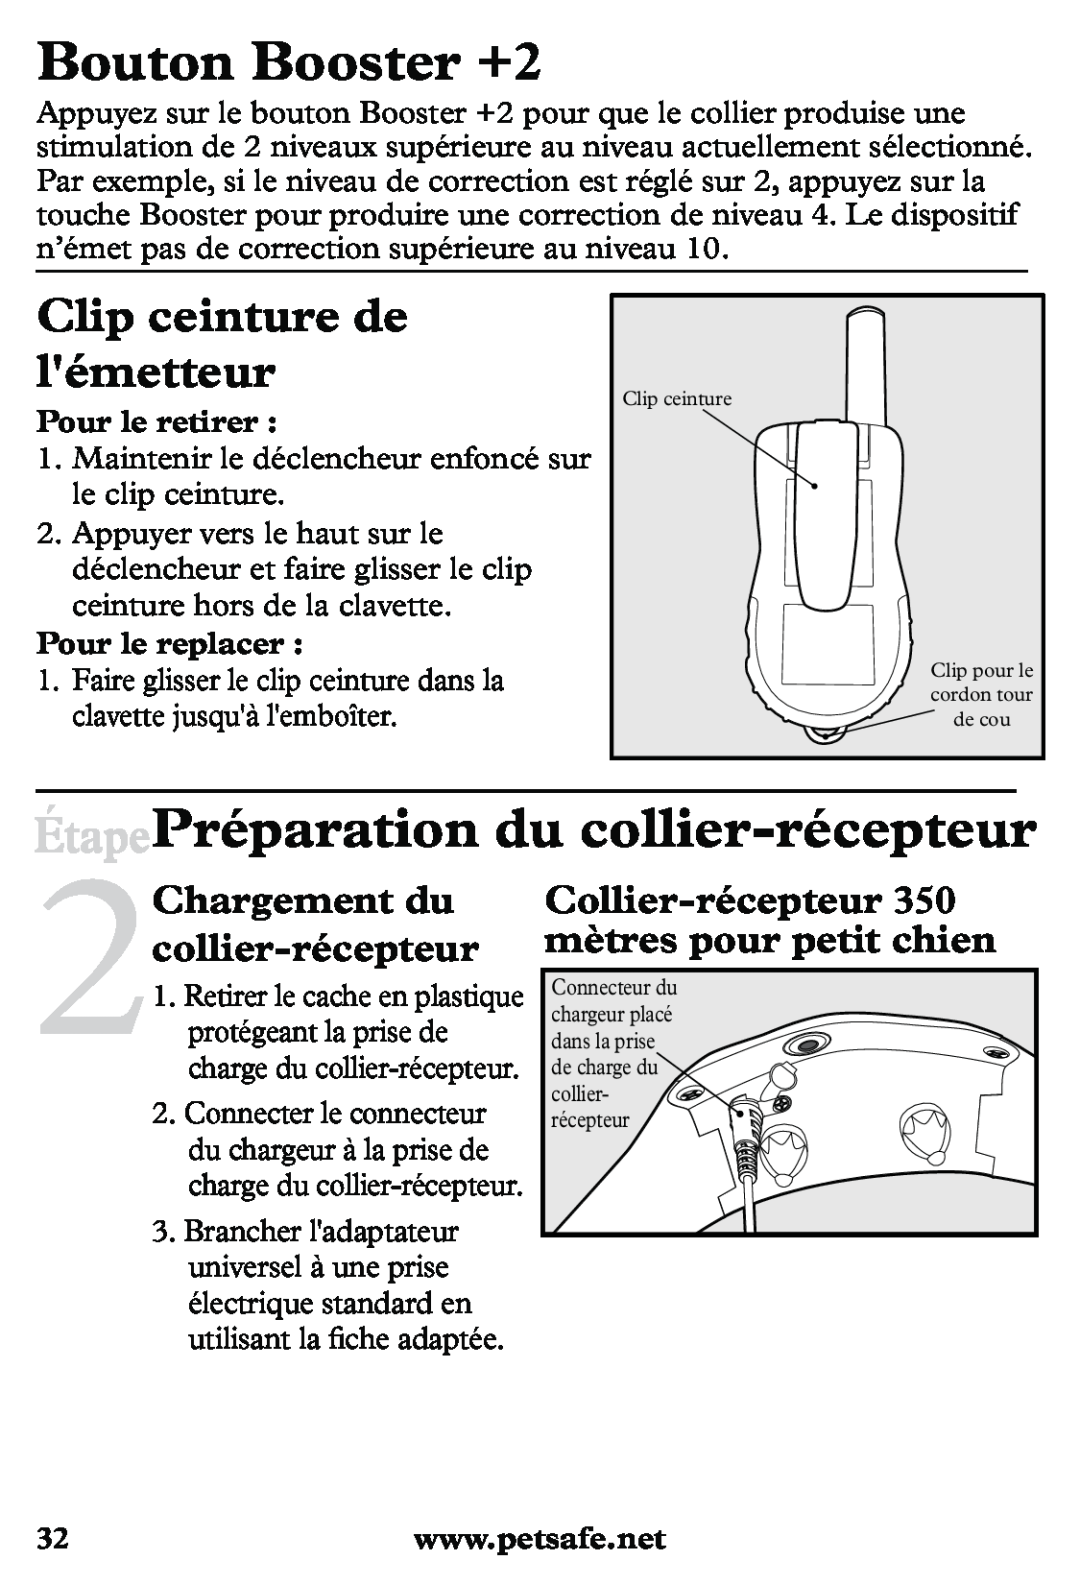 Petsafe PDT20-11939 Bouton Booster +2, ÉtapePréparation du collier-récepteur, Clip ceinture de lémetteur, Pour le retirer 